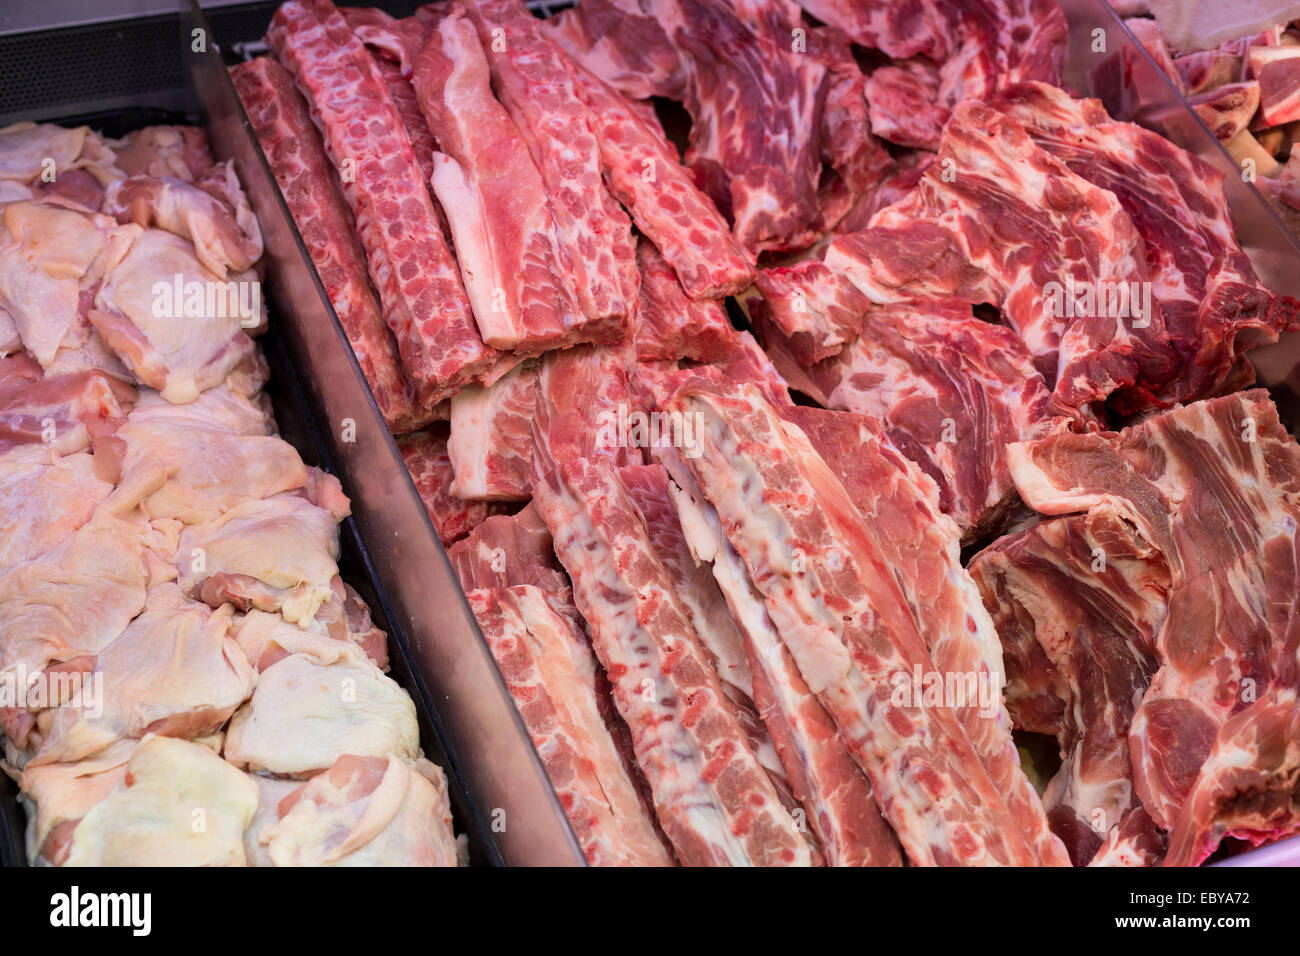 pork ribs in Butcher's Shop Stock Photo